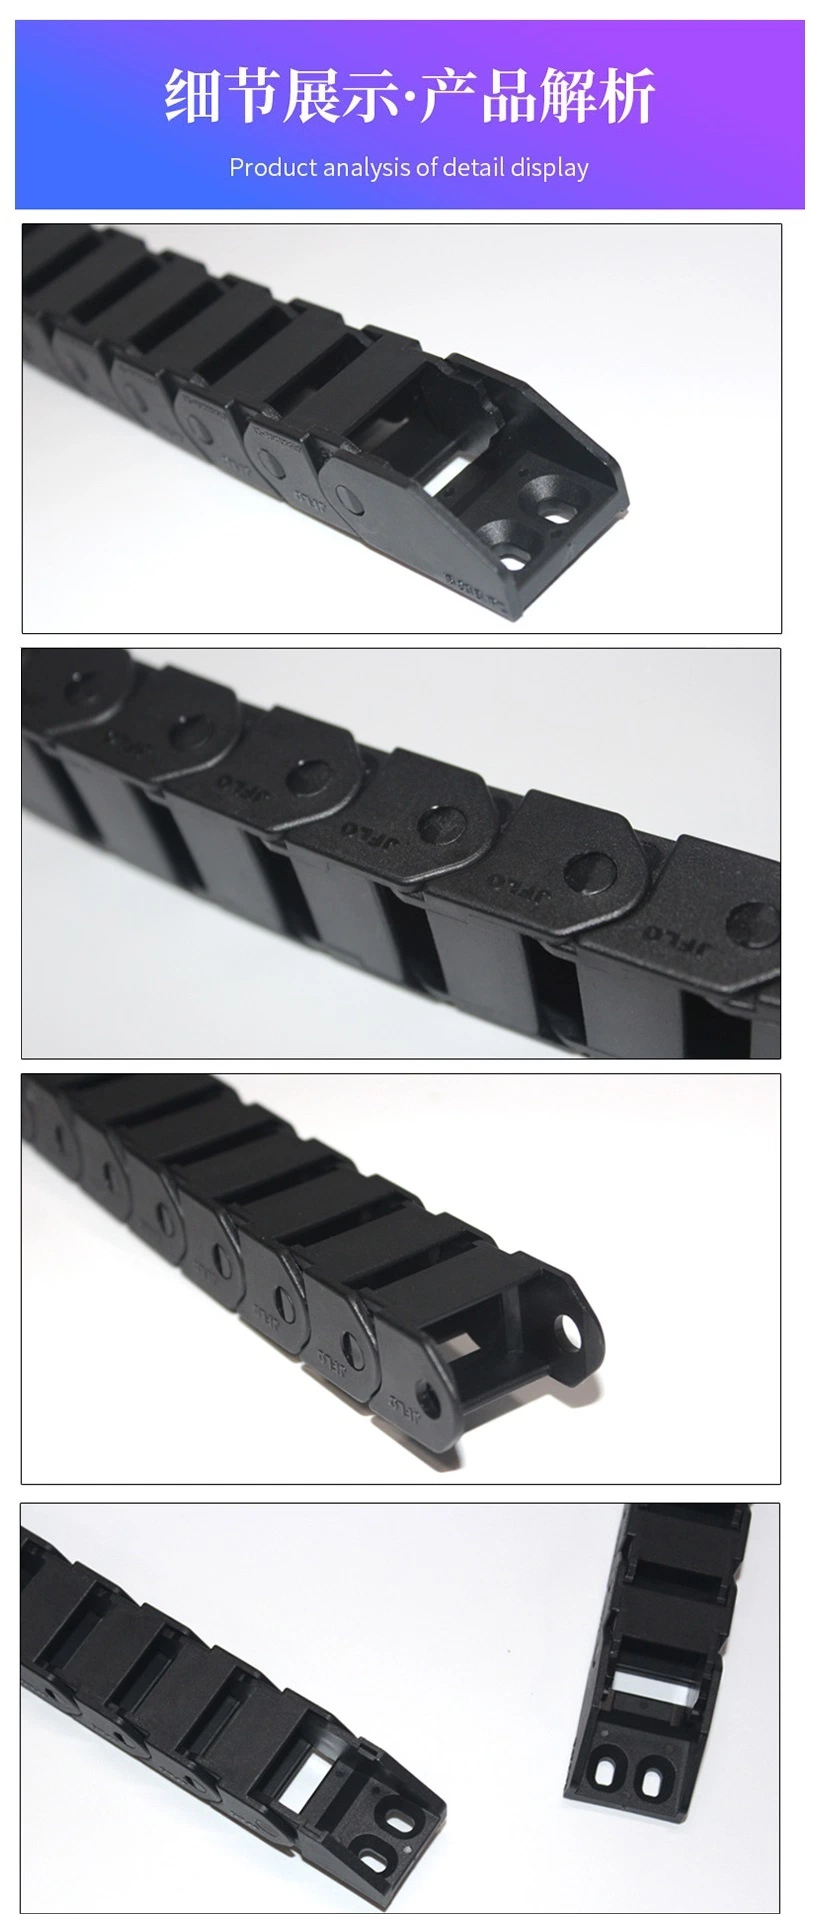 Plastic Bridge Type Drag Chain for Numerical Control Machine Tool